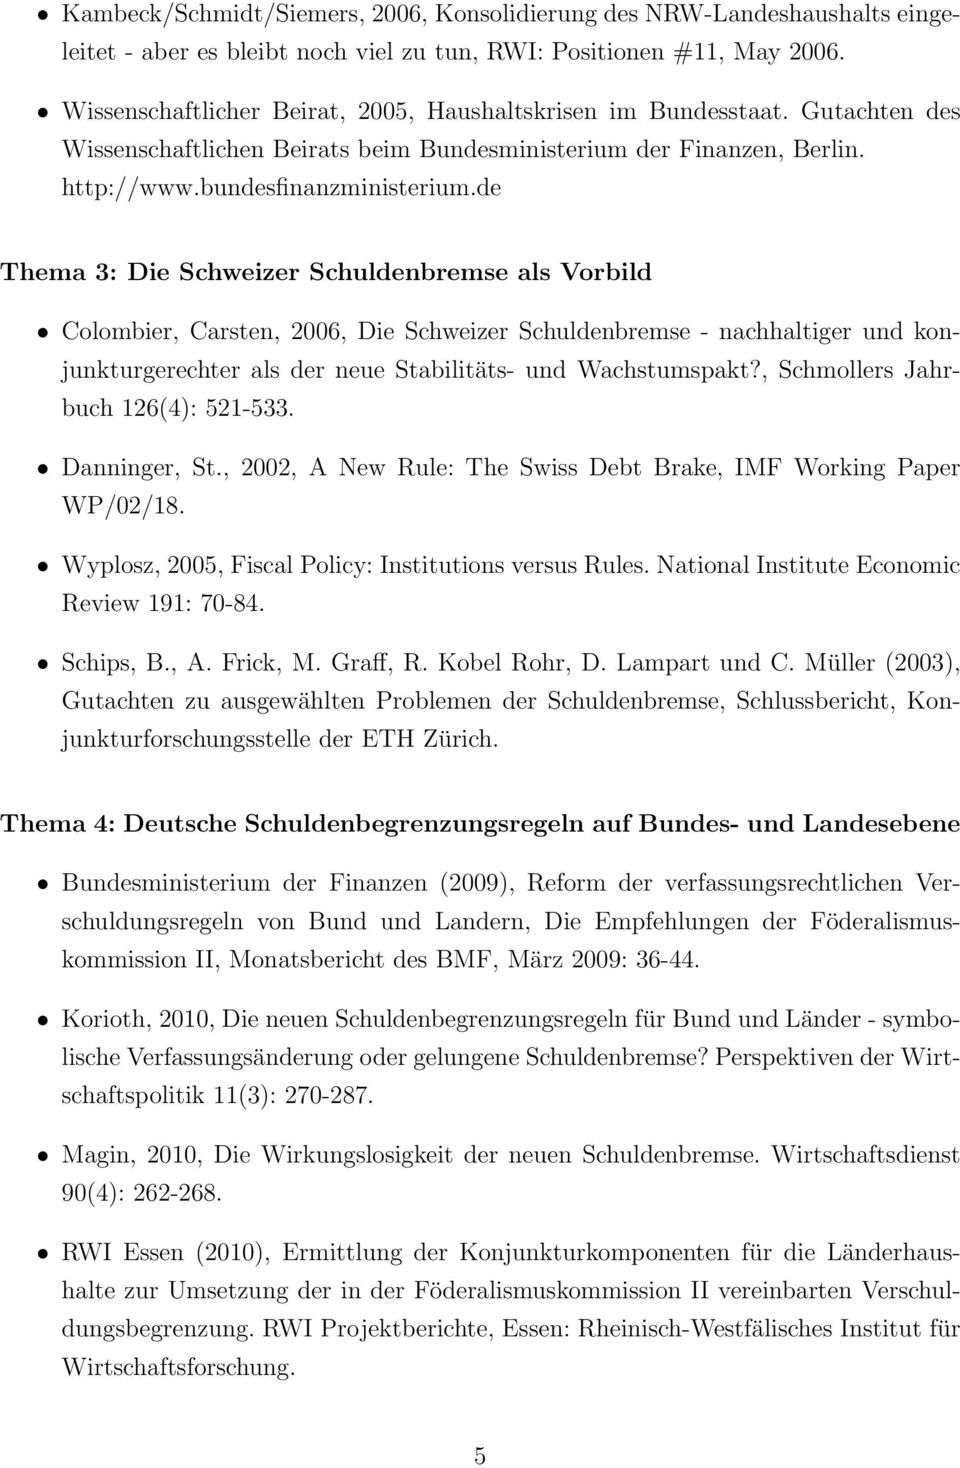 de Thema 3: Die Schweizer Schuldenbremse als Vorbild Colombier, Carsten, 2006, Die Schweizer Schuldenbremse - nachhaltiger und konjunkturgerechter als der neue Stabilitäts- und Wachstumspakt?